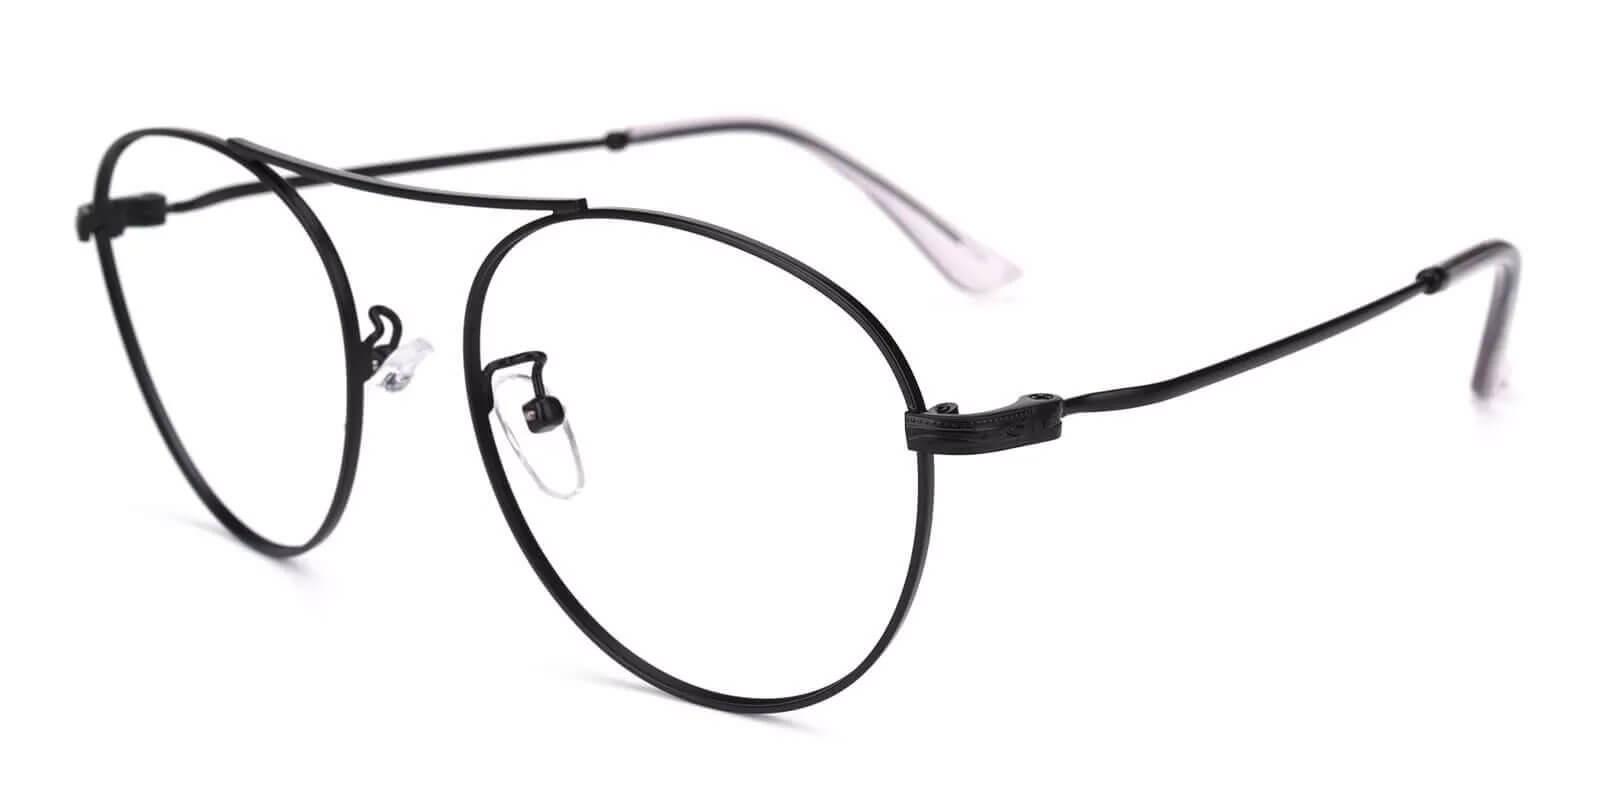 Chloe Black Metal Eyeglasses , NosePads Frames from ABBE Glasses